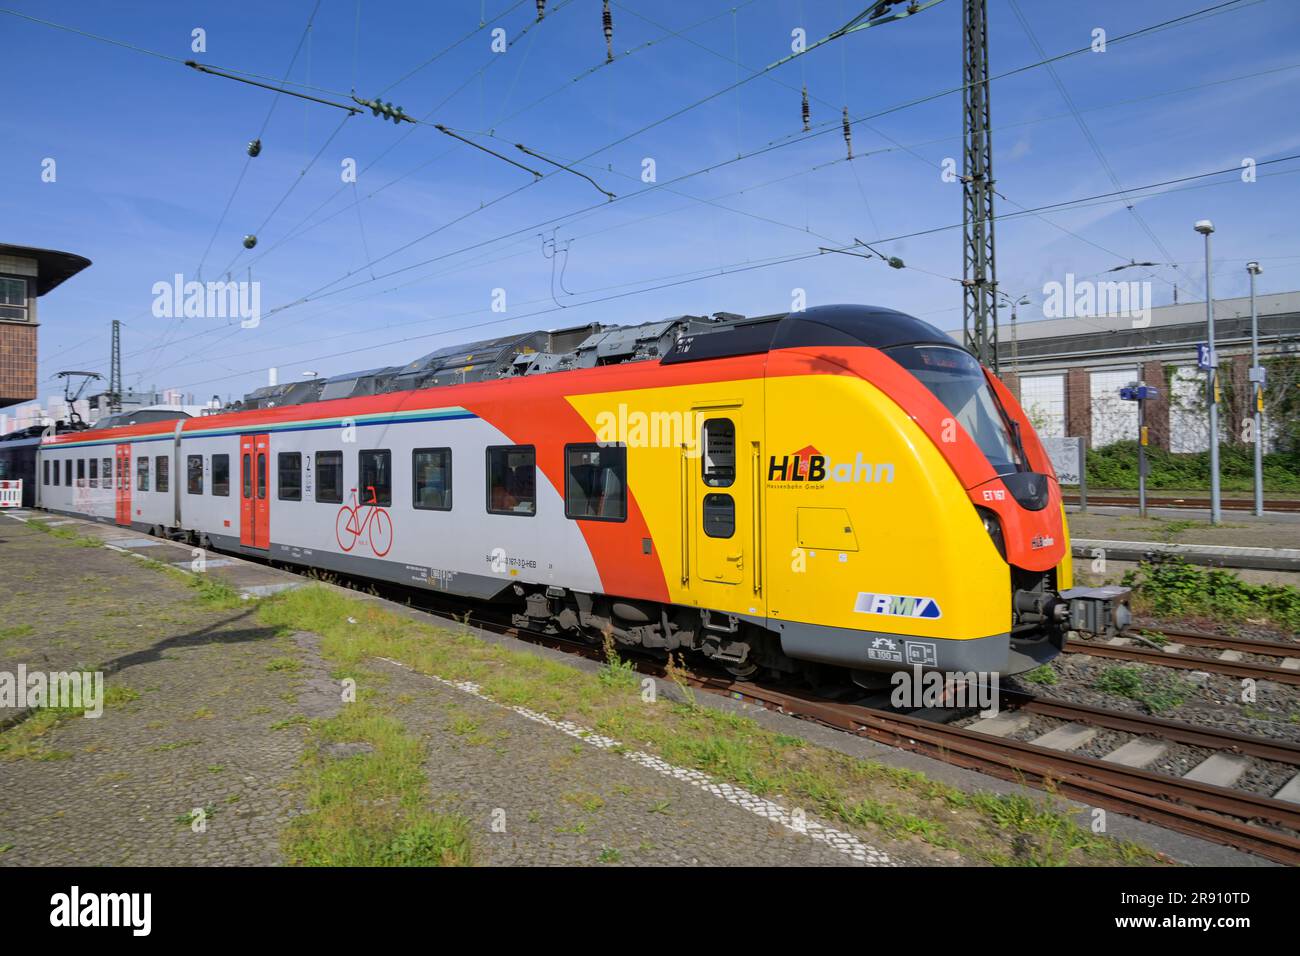 Regionalzug Hessenbahn HLB, Opelwerk, Rüsselsheim, Hessen, Deutschland Foto Stock